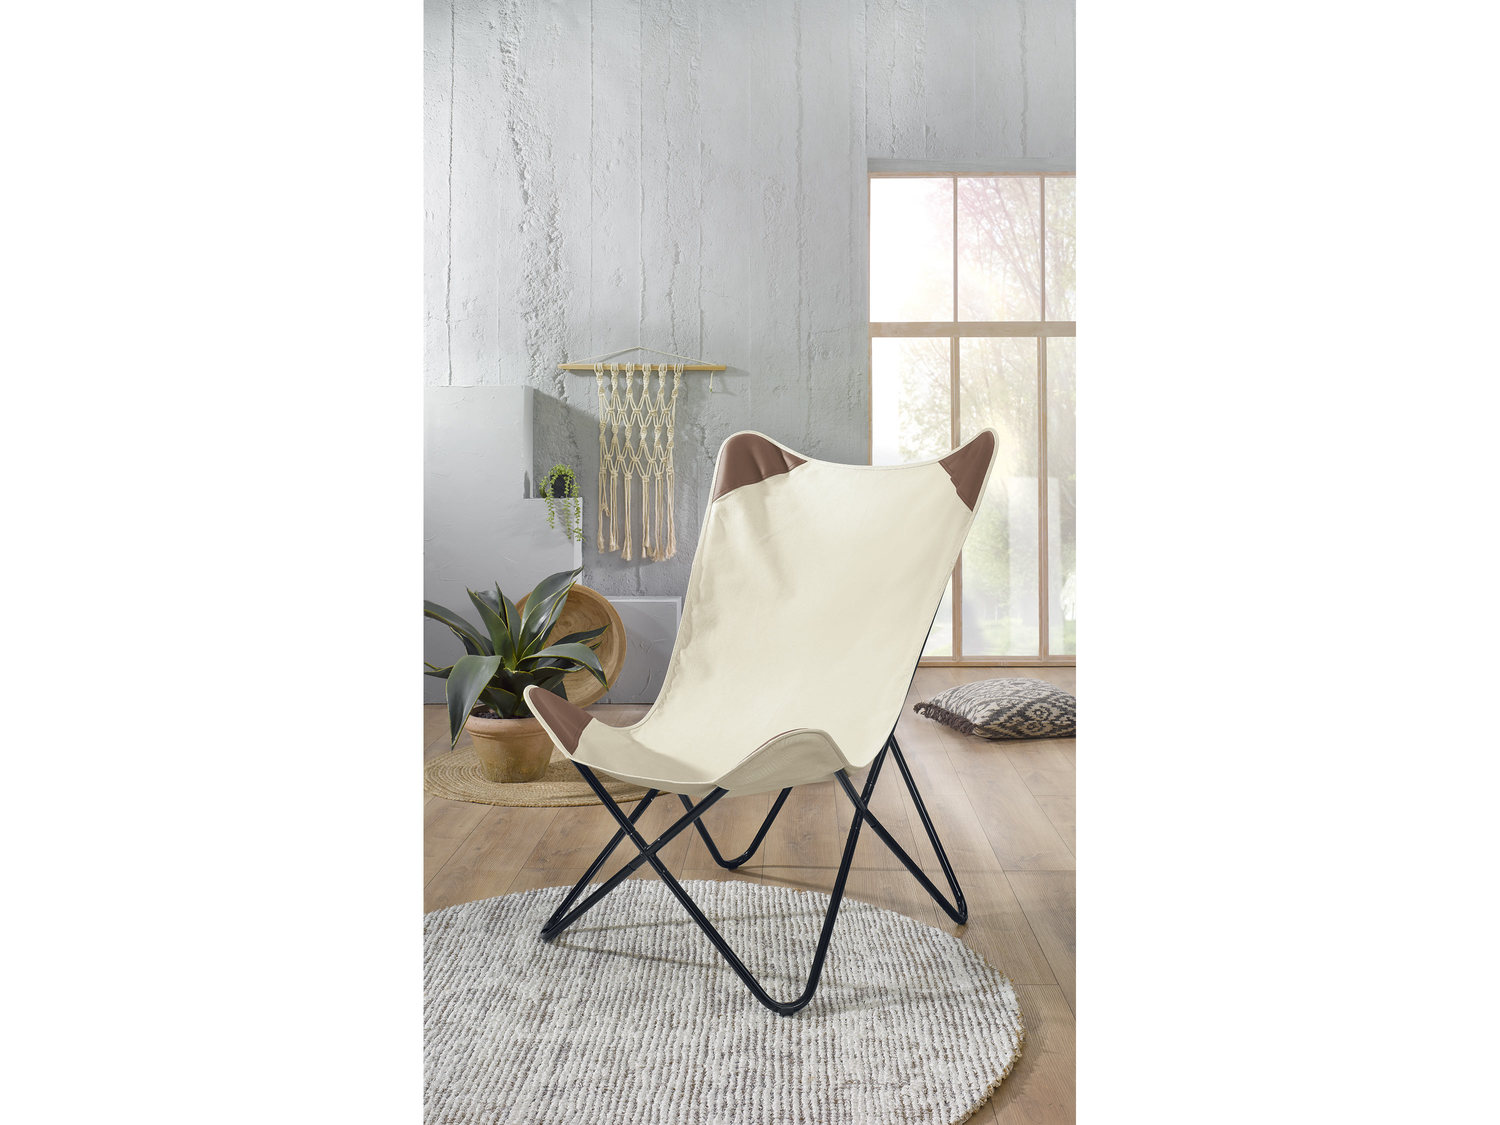 Krzesło butterfly Livarno Living, cena 129,00 PLN 
- styl Etno
- wzmocnione narożniki ...